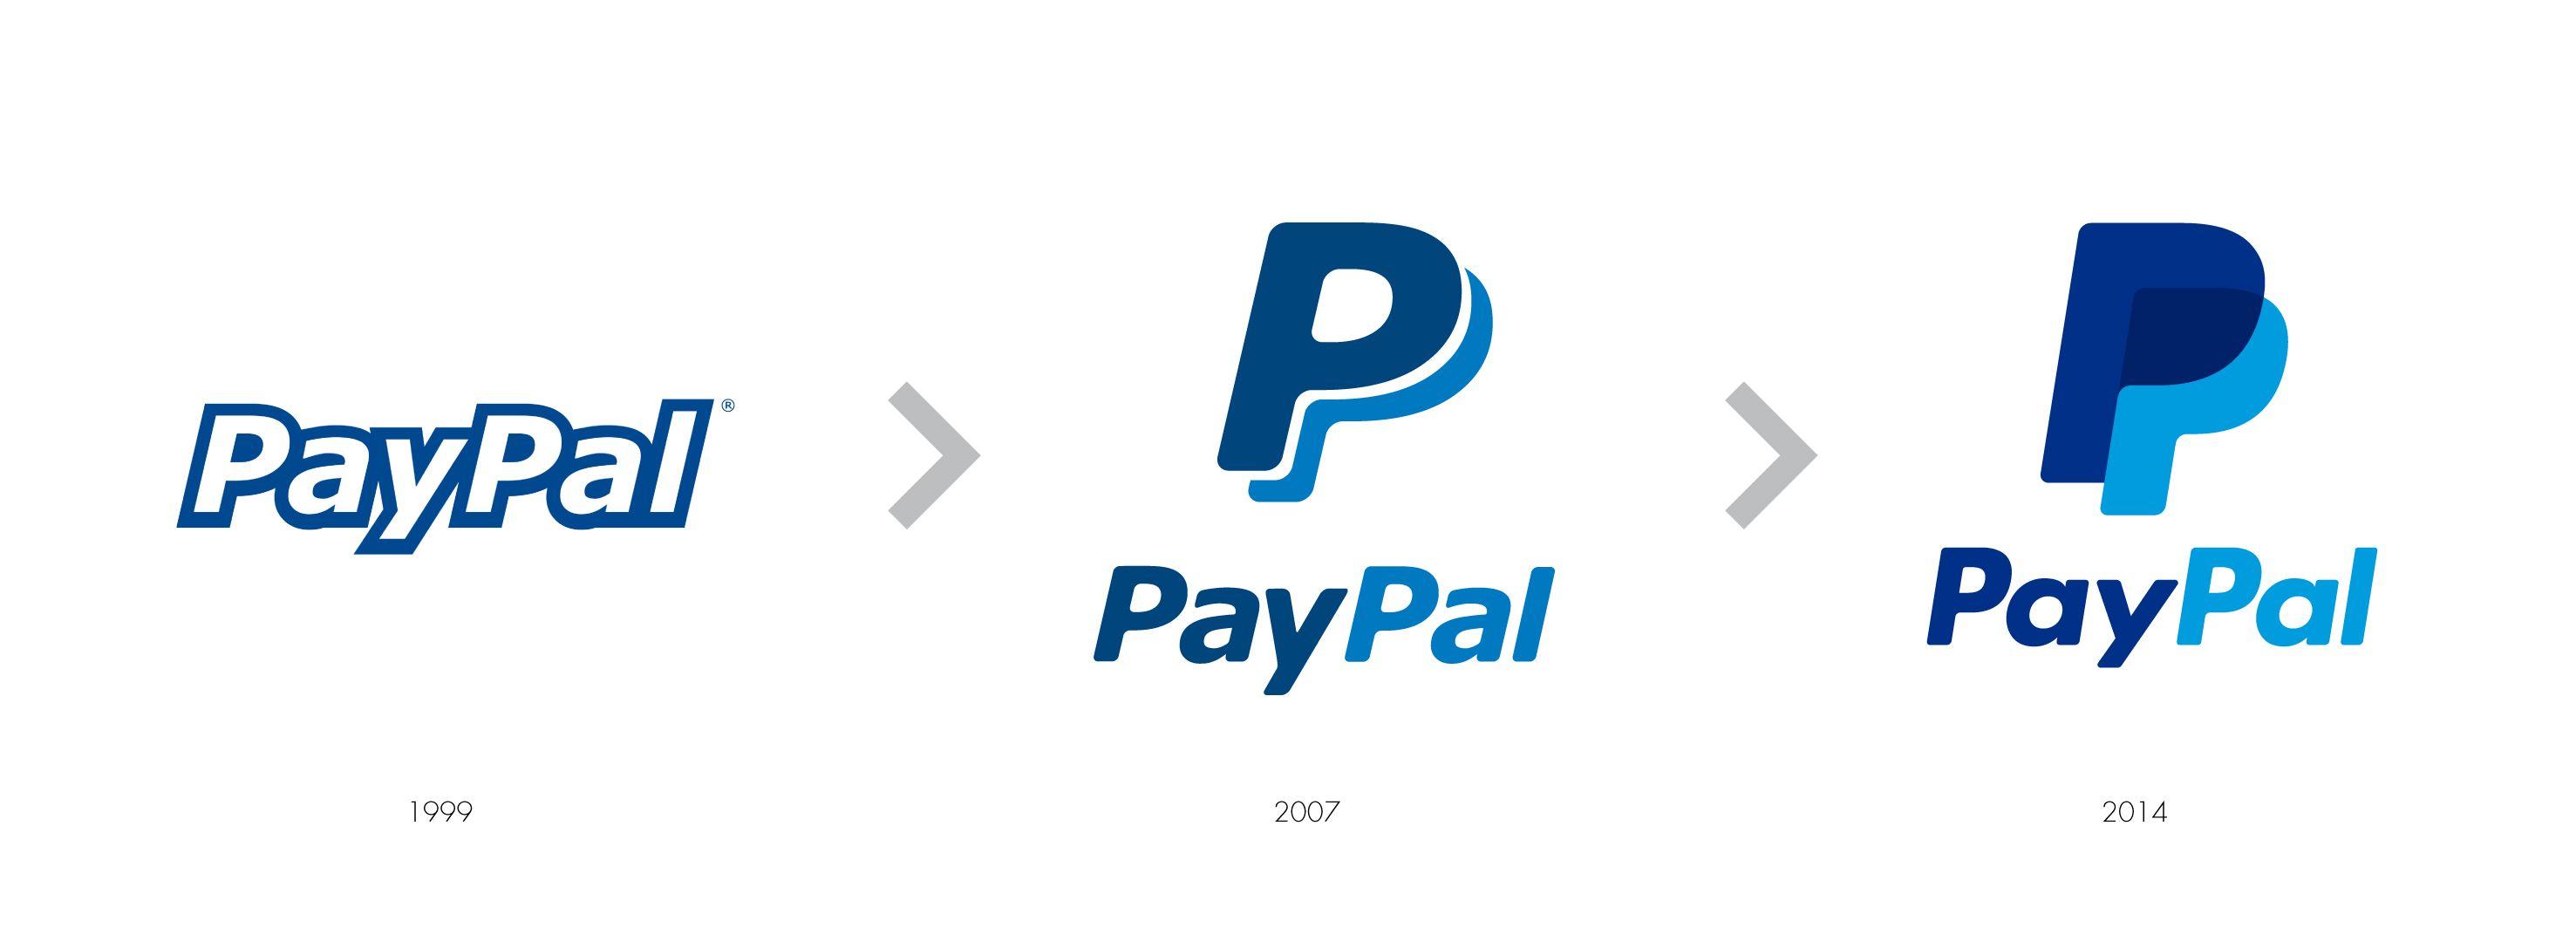 PayPal Logo - Paypal Logos